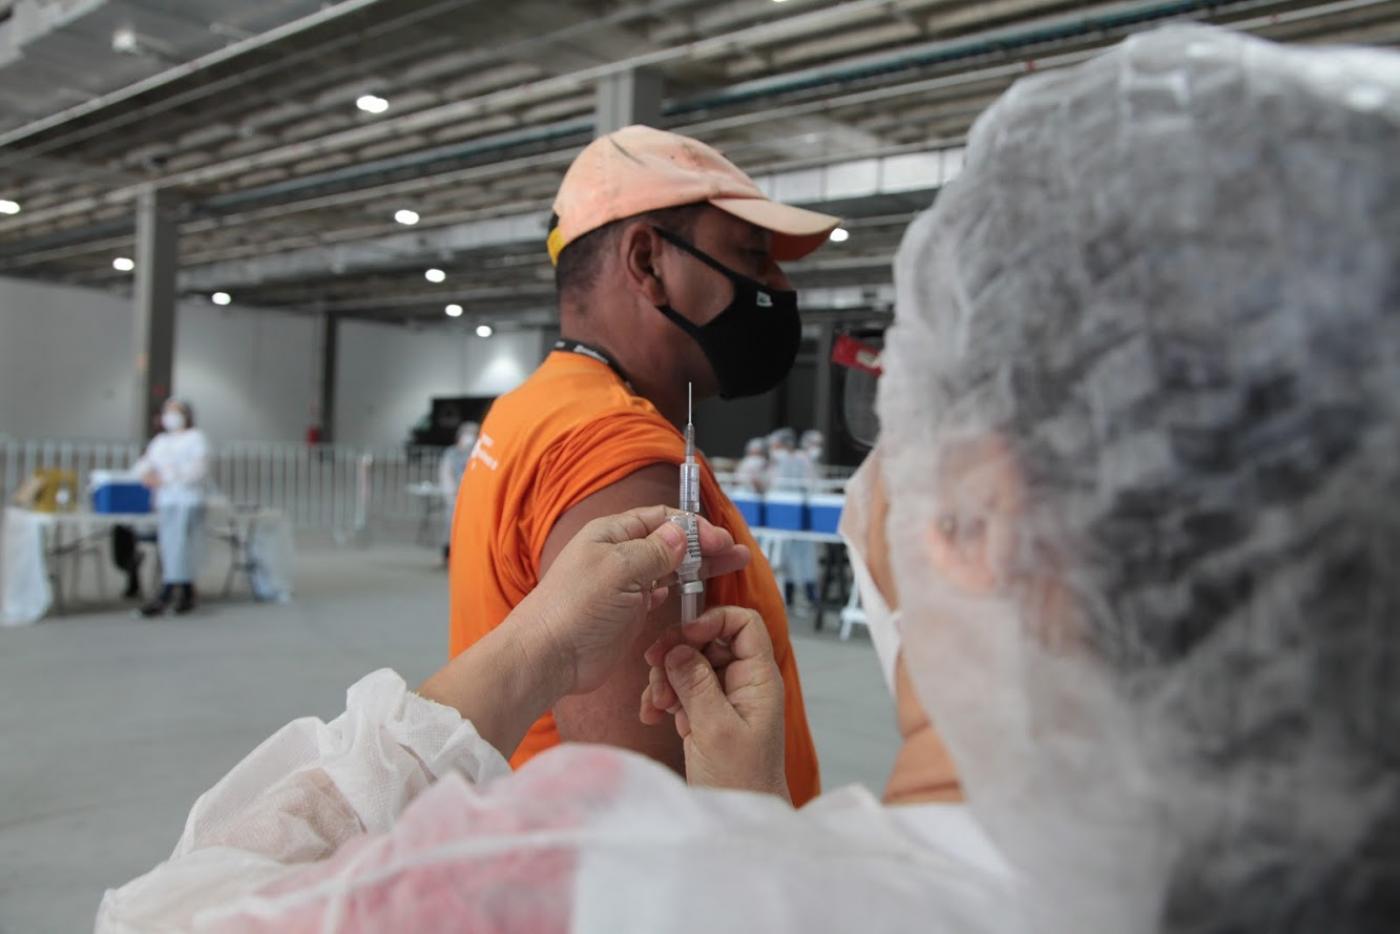 mulher segura seringa com agulha, se preparando para vacina homem que está com a manga da camisa arregaçada. #paratodosverem